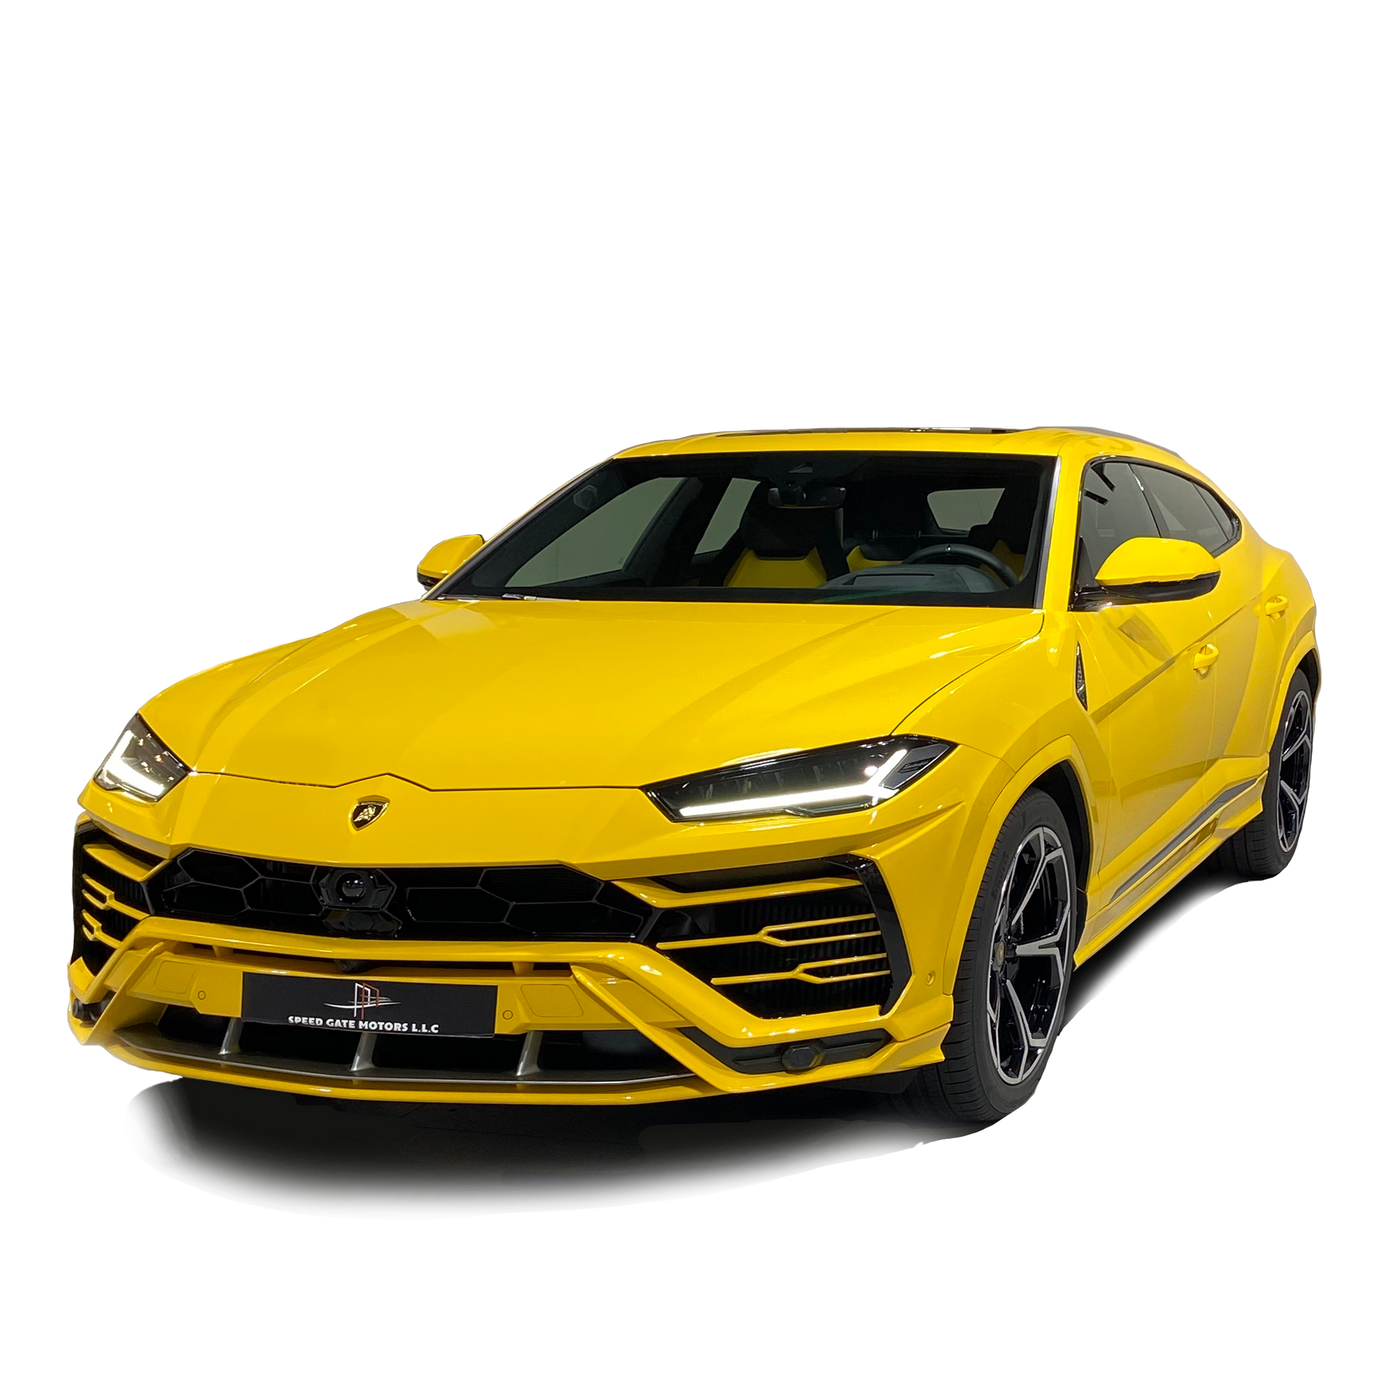 Lamborghini Urus A\t Ptr Model 2021 - 0 Km